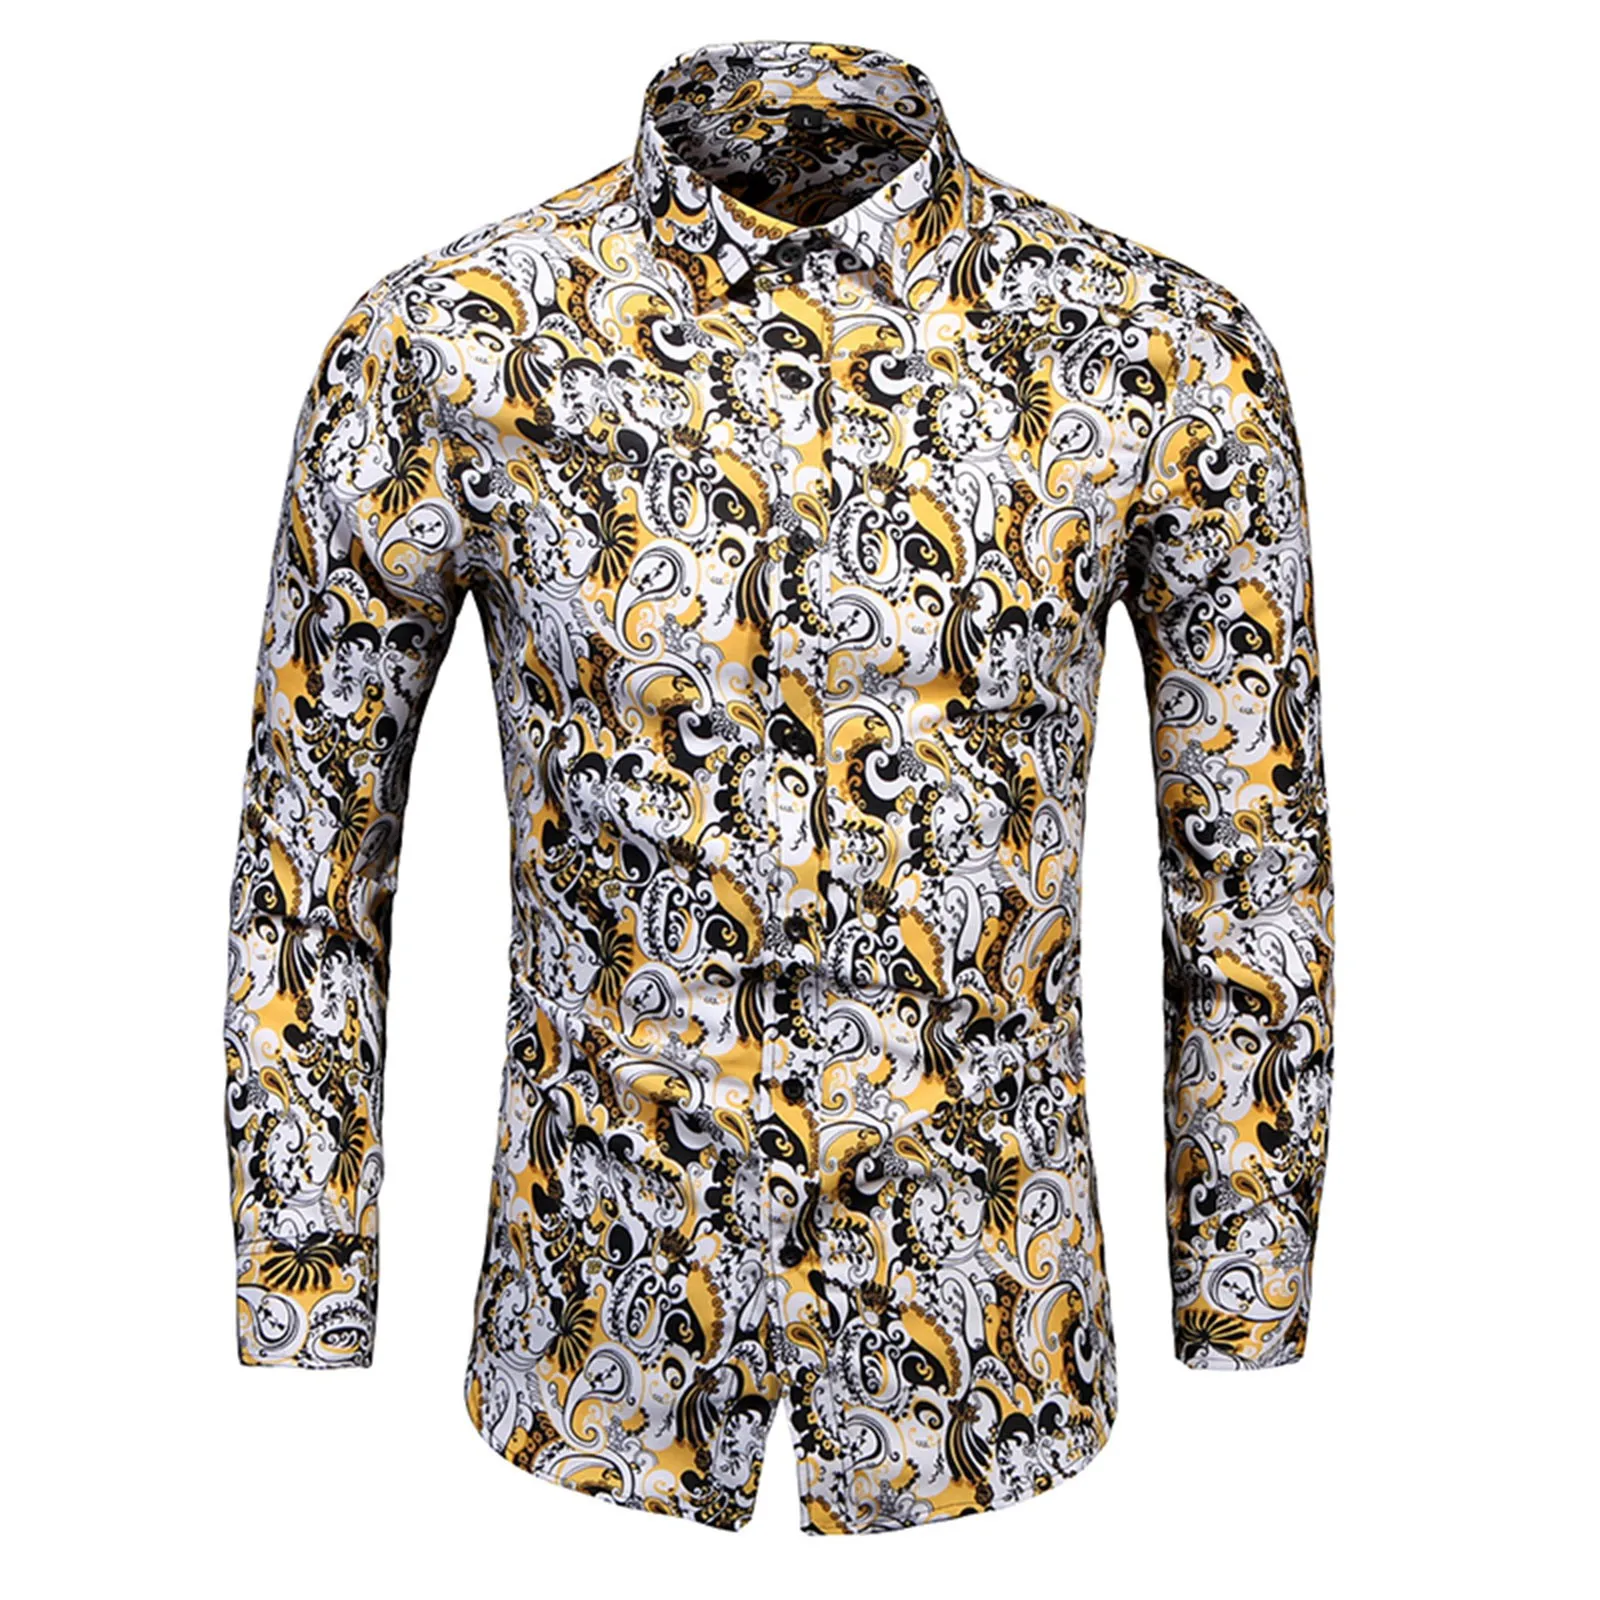 

Рубашка мужская с длинным рукавом, модная пляжная блуза свободного покроя в повседневном стиле, с принтом, в гавайском стиле, весна-лето 2023